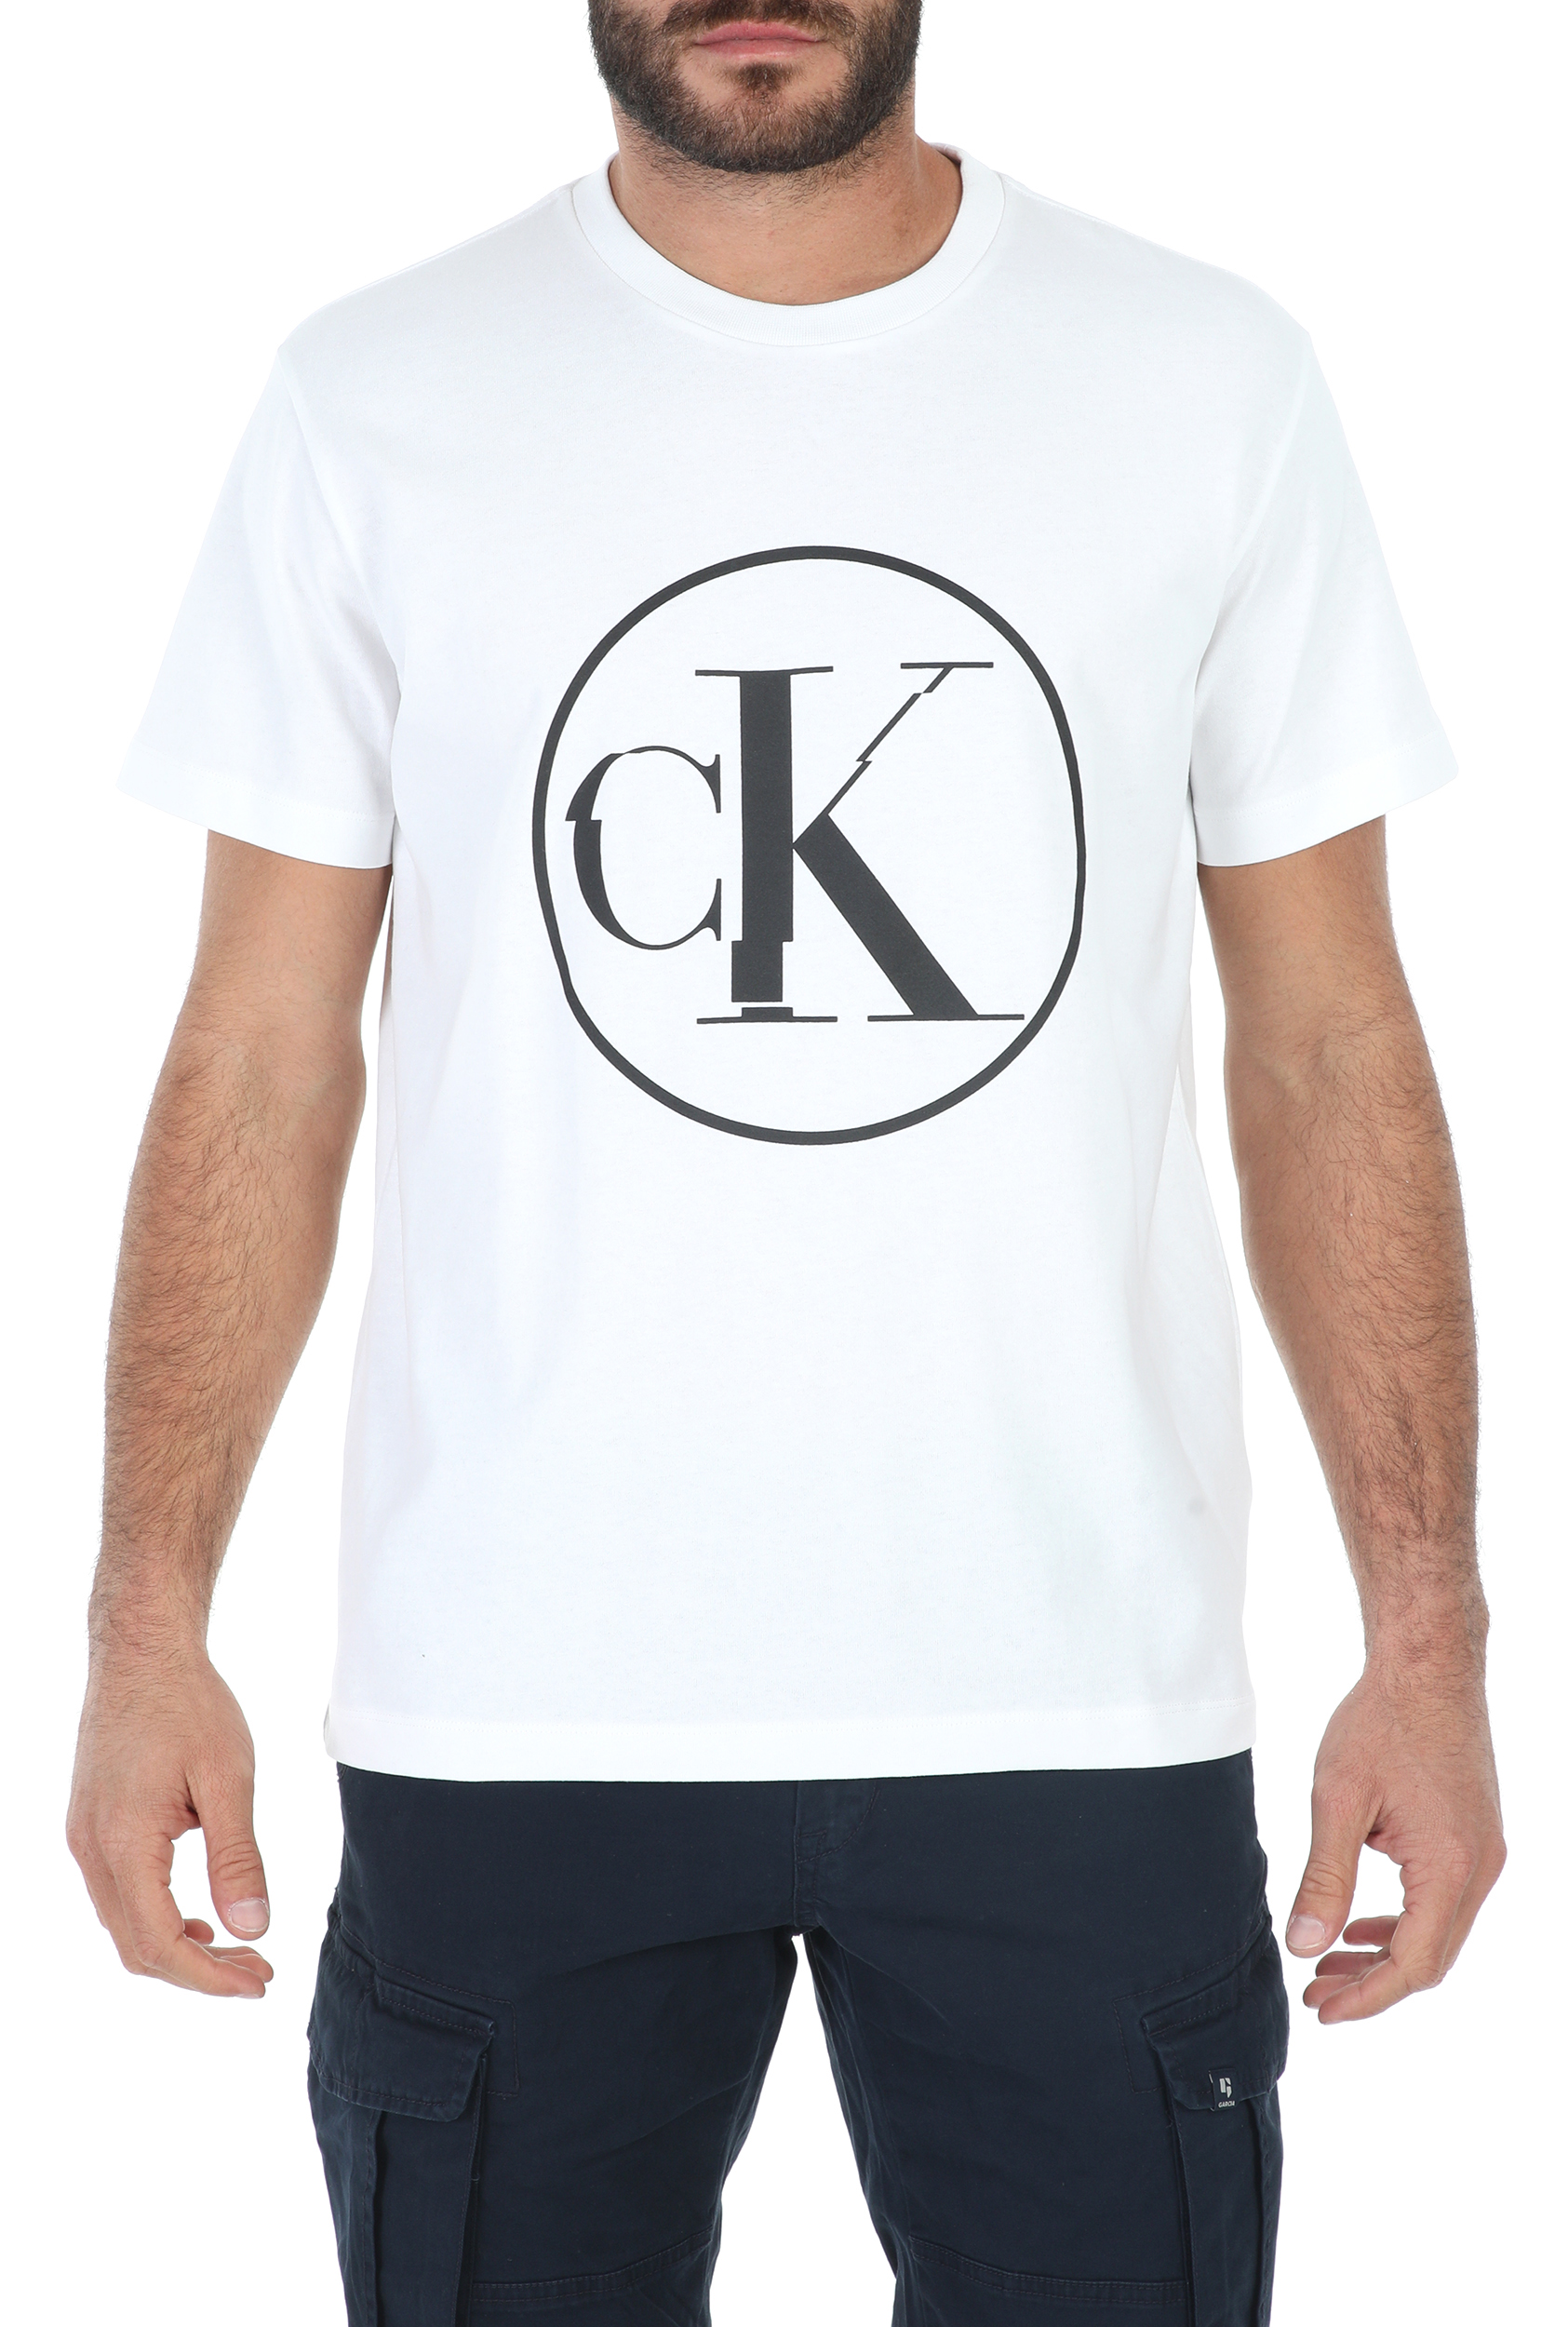 CALVIN KLEIN JEANS – Ανδρικο t-shirt CALVIN KLEIN JEANS ROUND DISTORTED CK λευκο